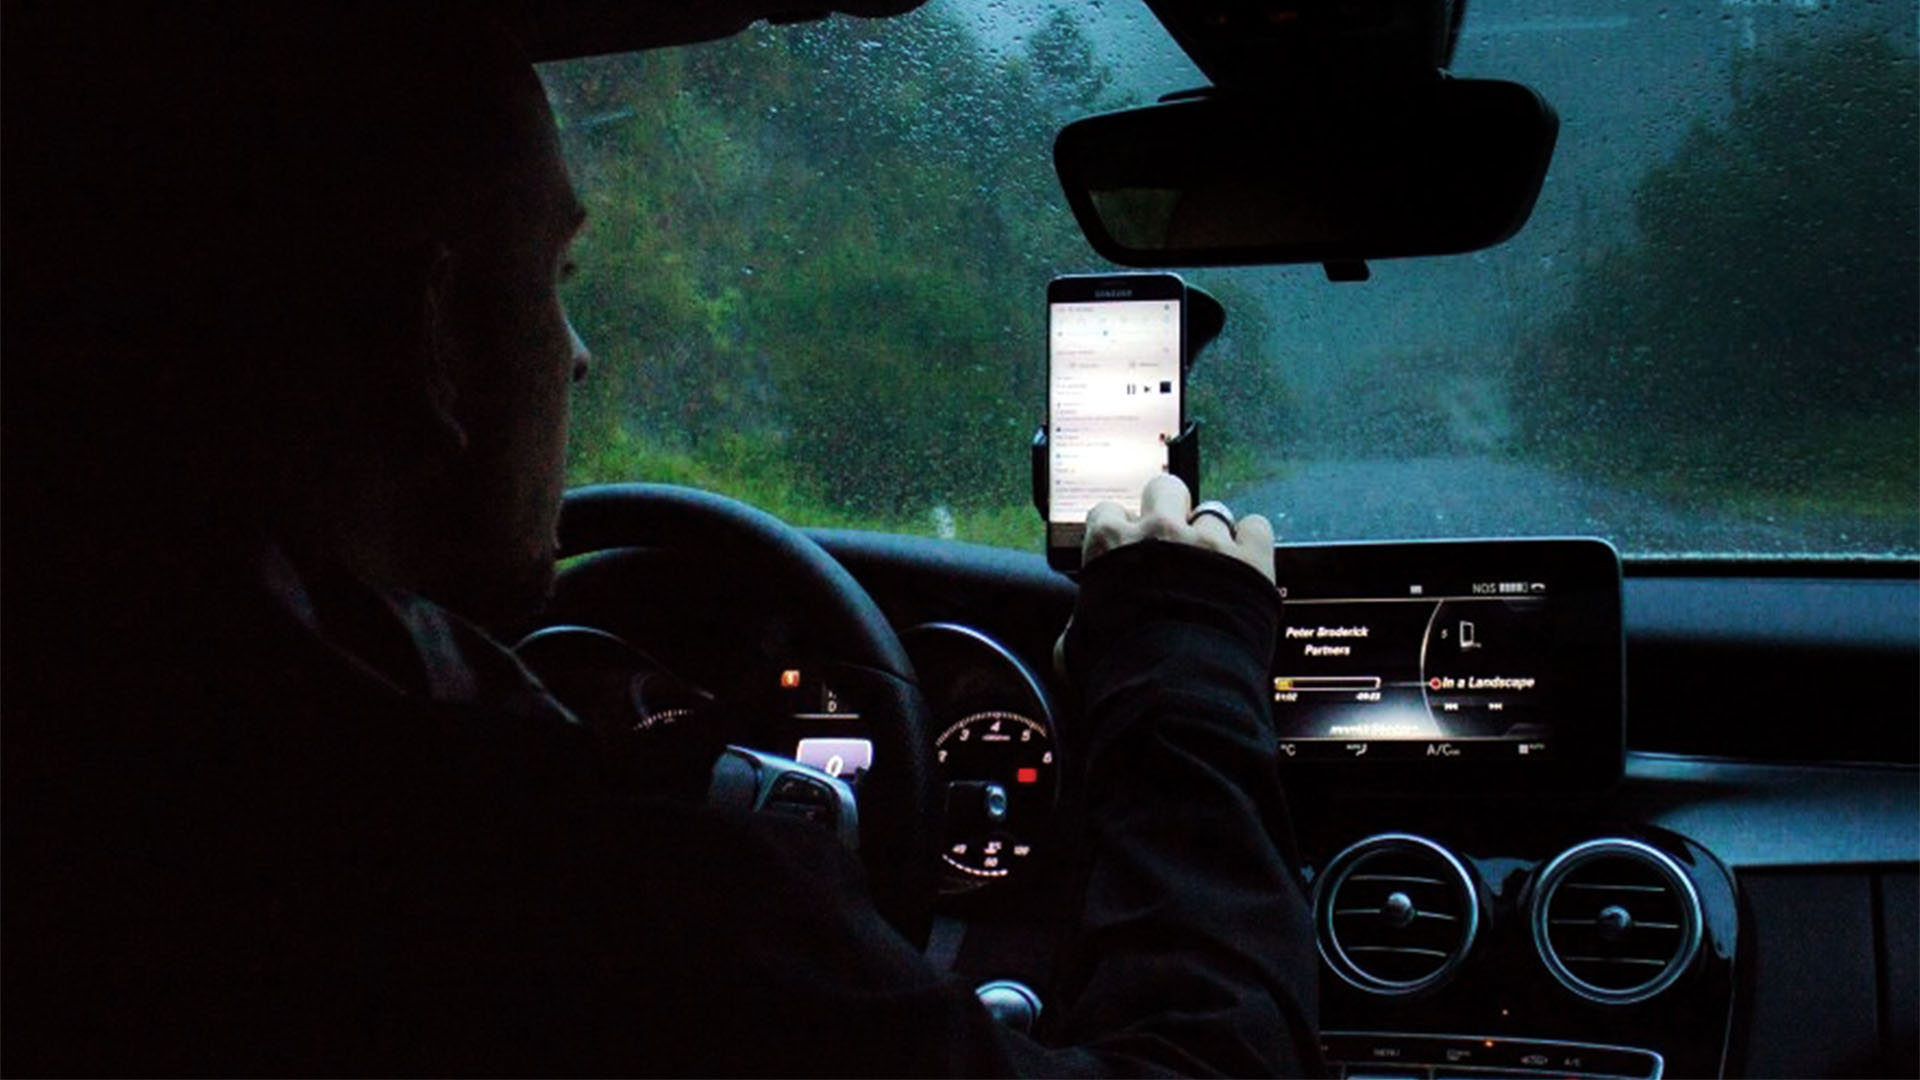 Sincronizar el celular con el carro: trucos para sacarle mayor provecho